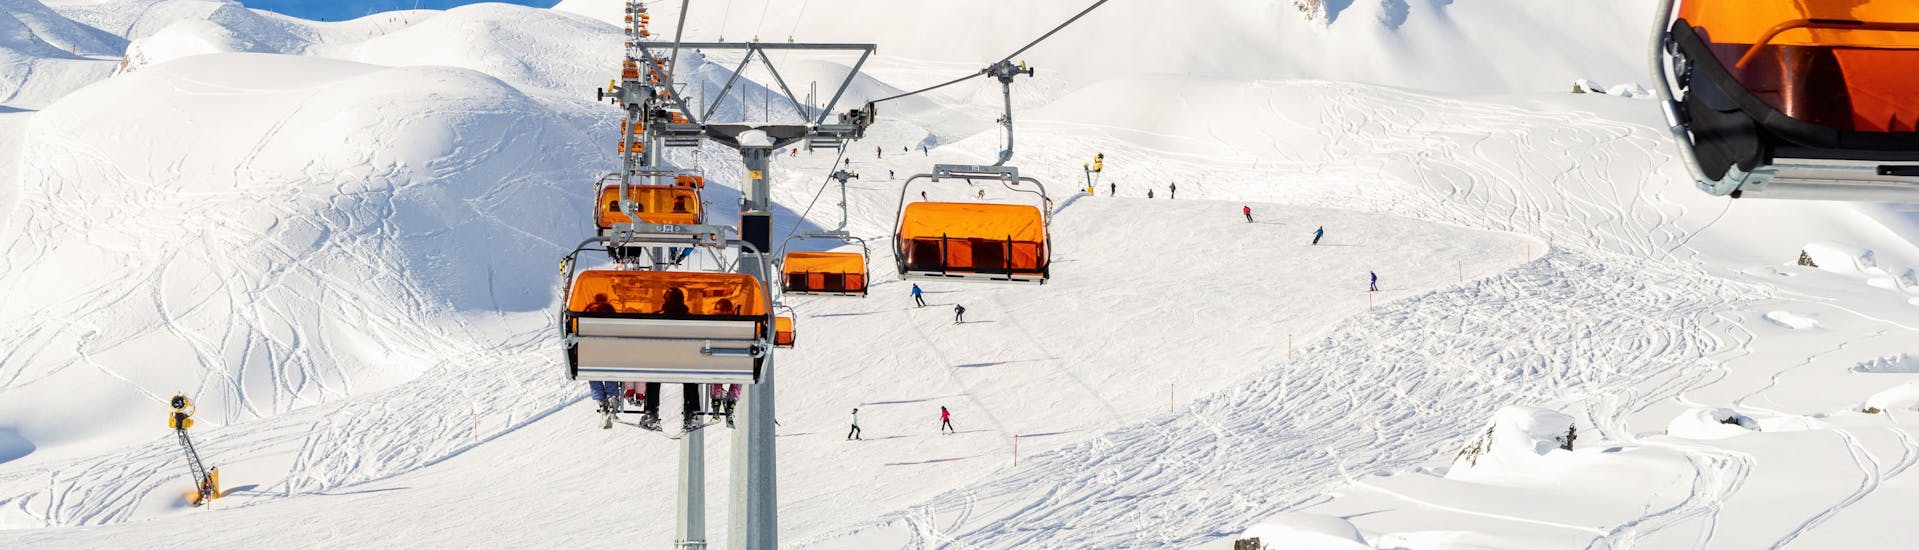 Blik op een zonnig berglandschap tijdens een skiles met een van de skischolen in Ischgl.